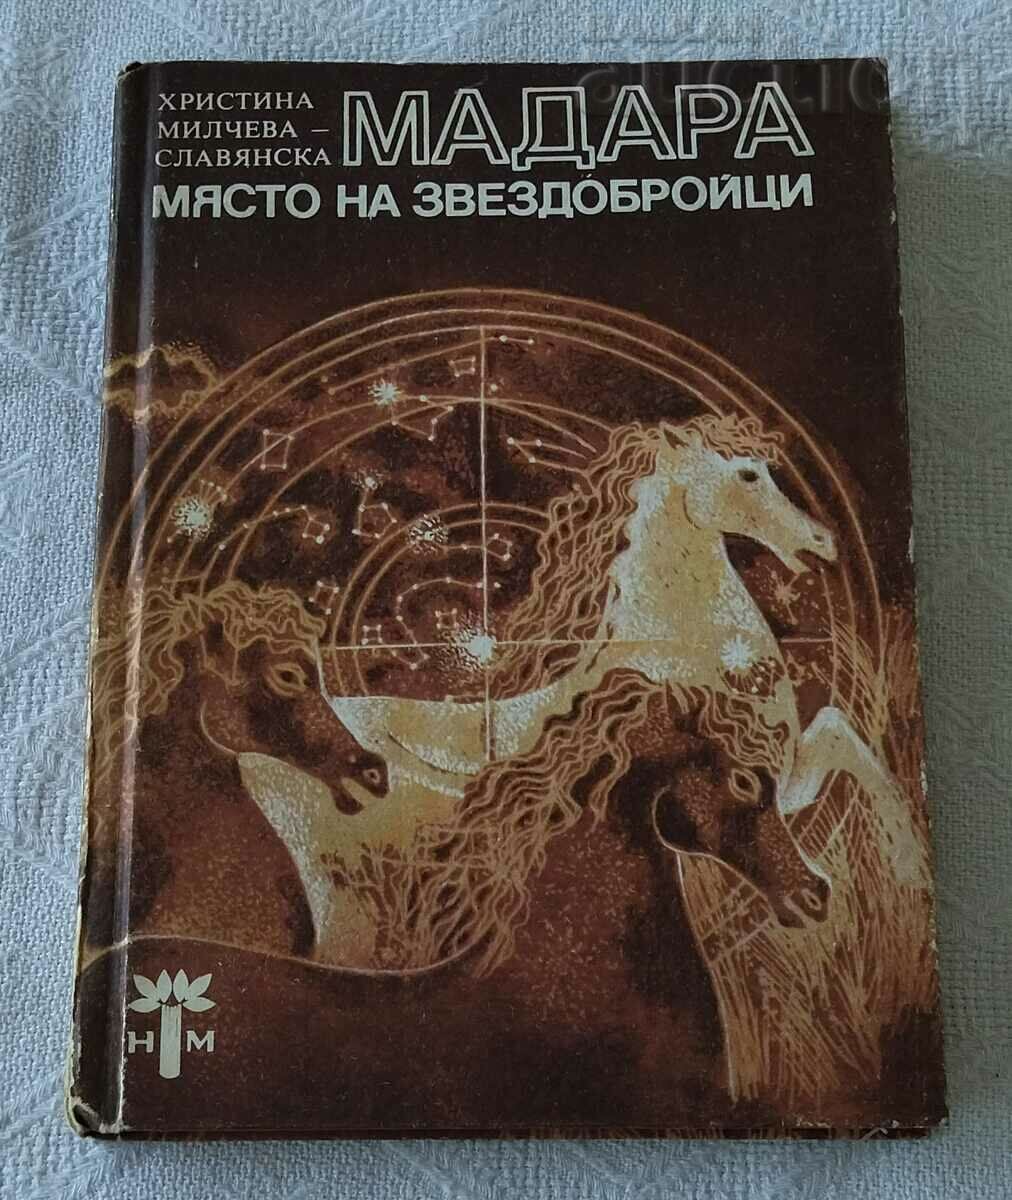 МАДАРА-МЯСТО НА ЗВЕЗДОБРОЙЦИ ХР. МИЛЧЕВА-СЛАВЯНСКА 1983 г.